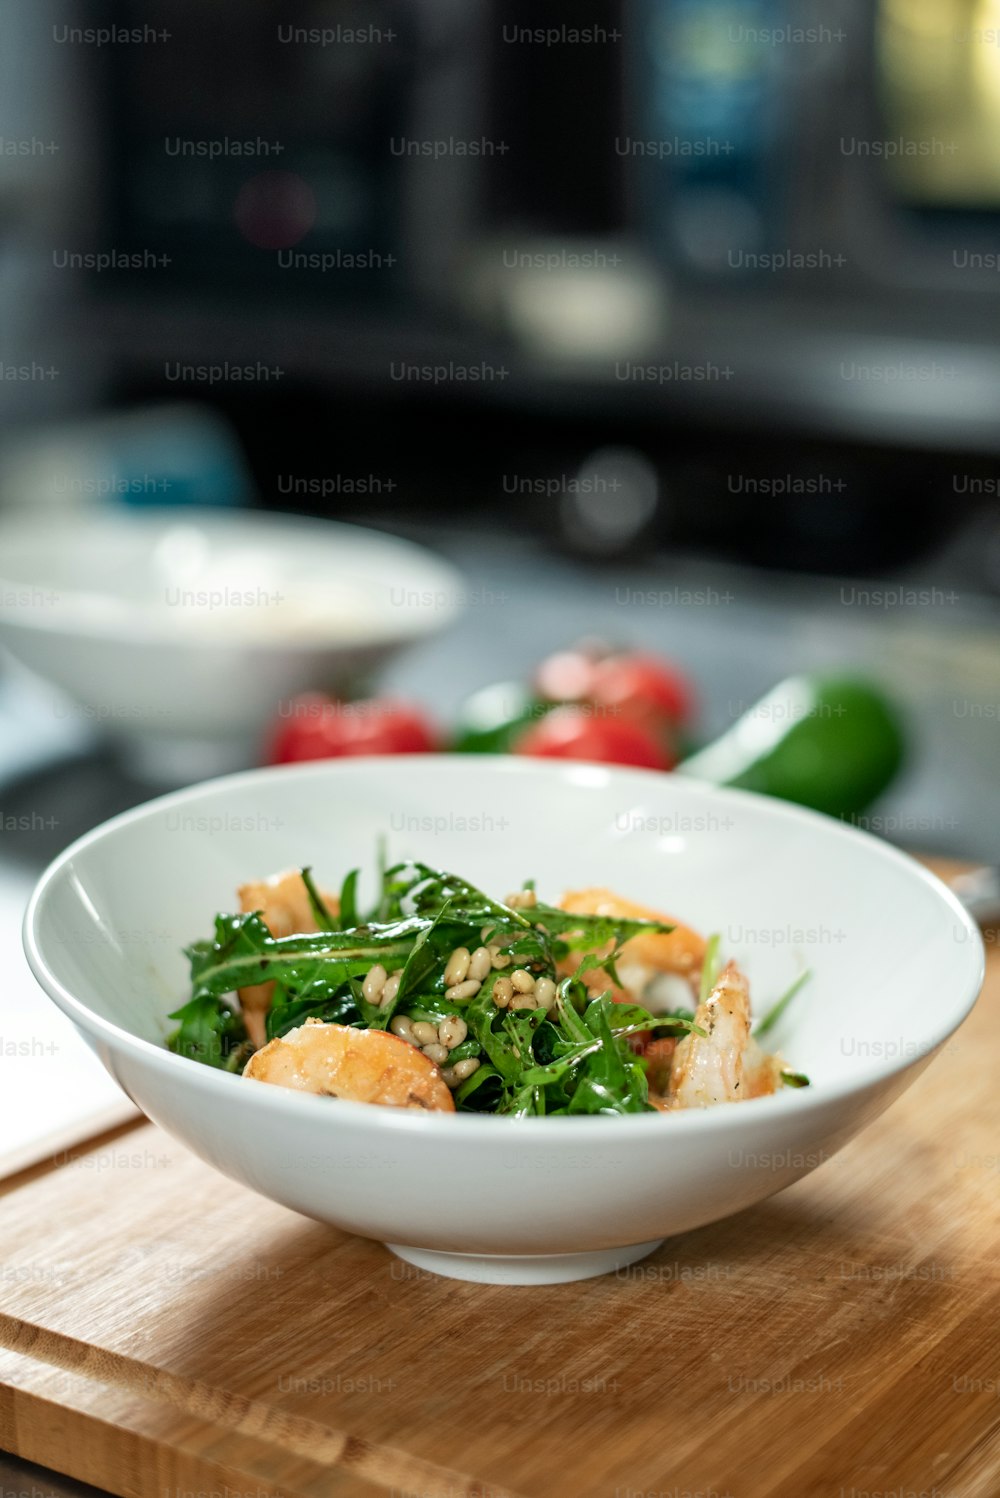 Holzbrett mit weißer Keramikschüssel mit appetitlichem Salat bestehend aus Ruccola, gekochten Garnelen und anderen Zutaten mit Öl